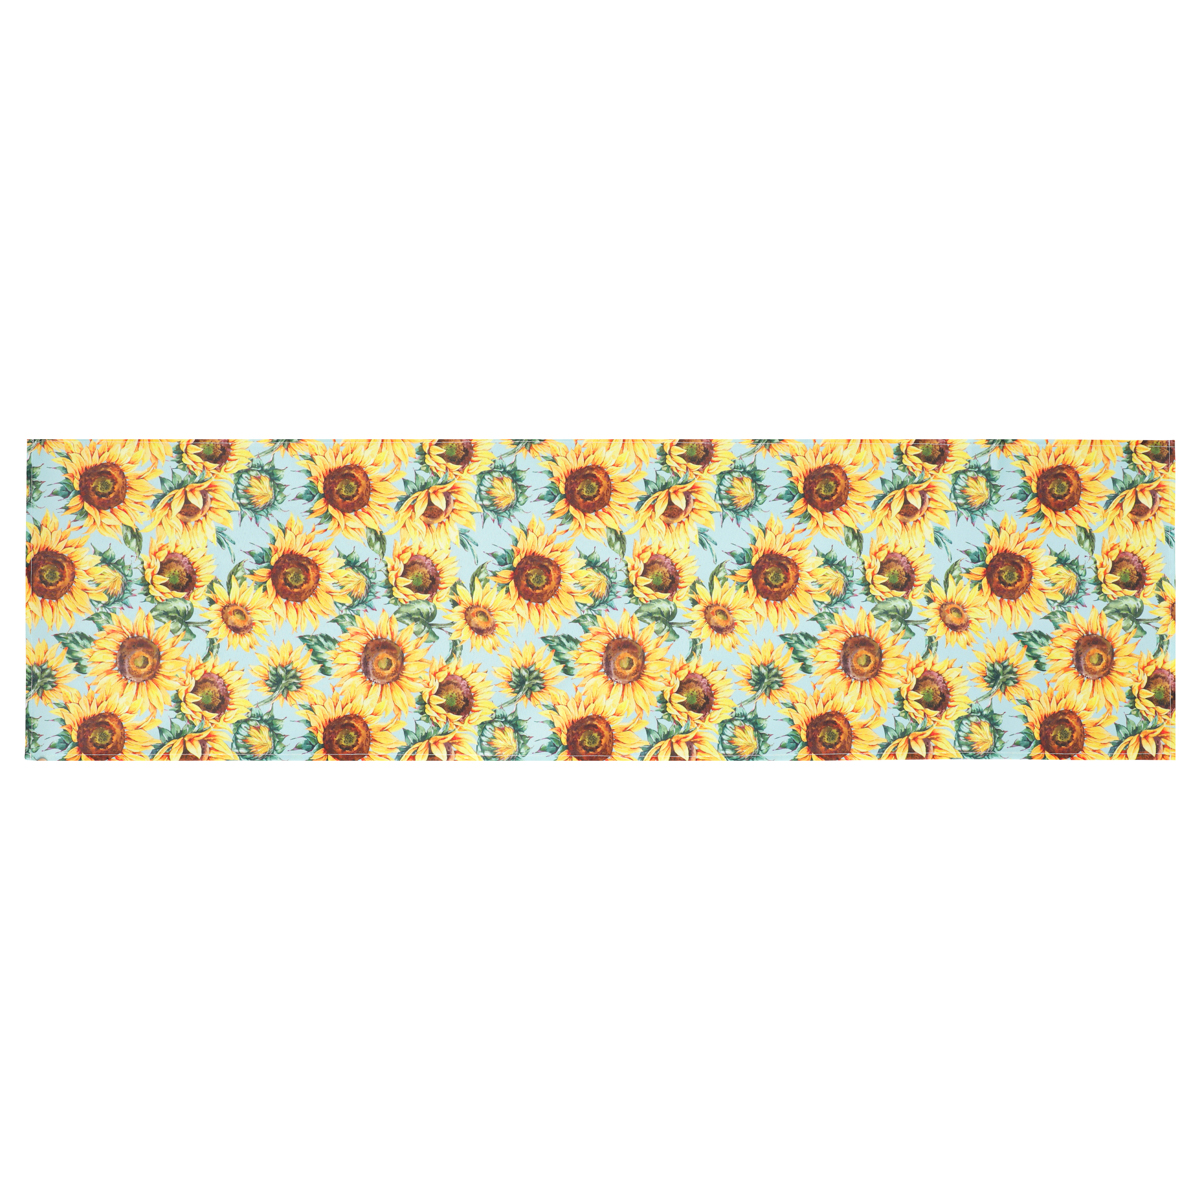 Běhoun s motivem slunečnic, modrý podklad, 40x150 cm, polyester.